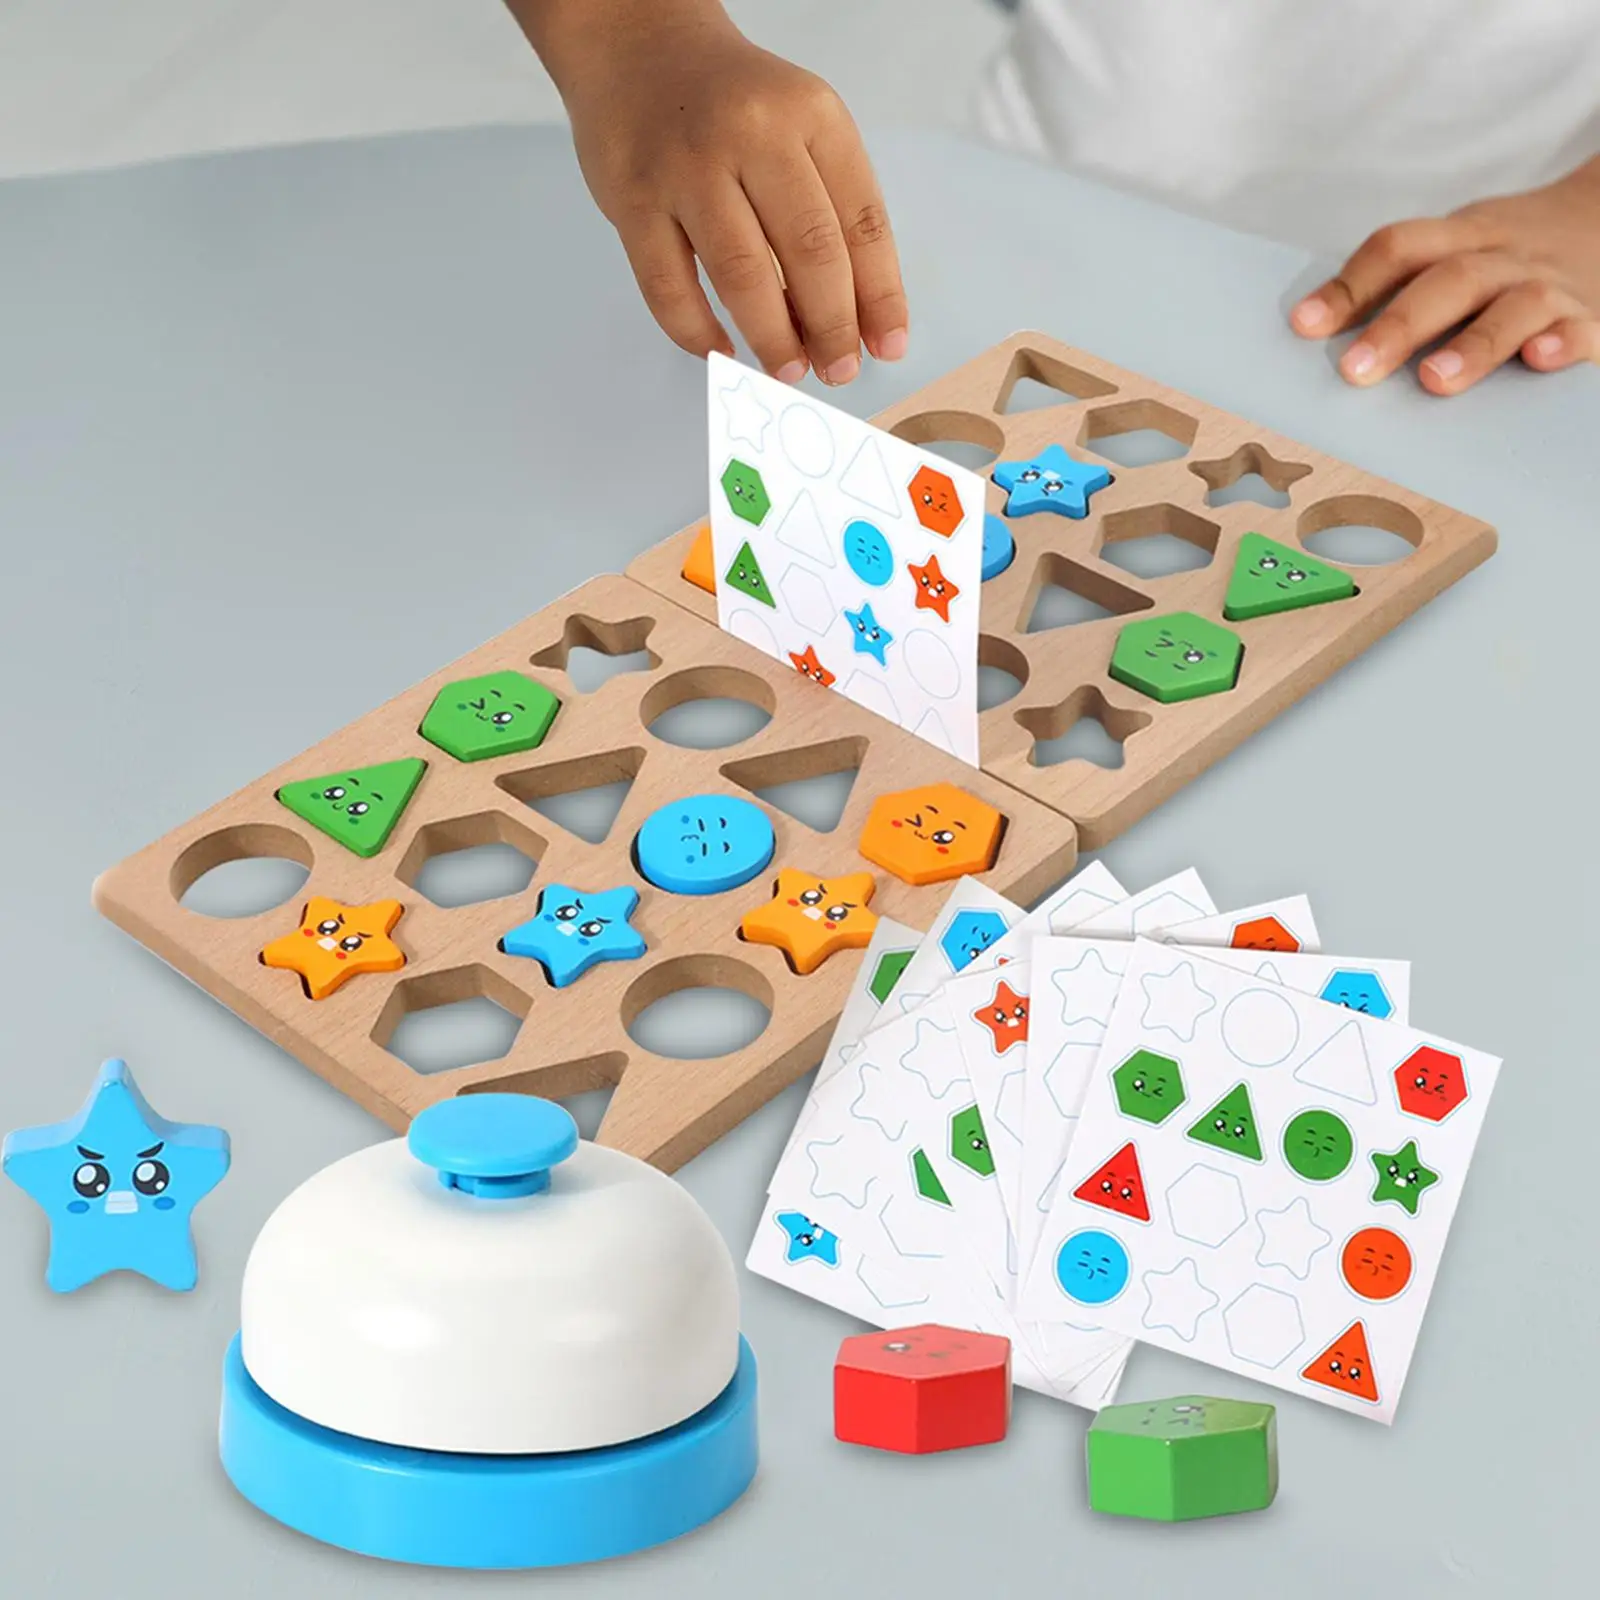 Wood Shape Sorting Geometric Stacker Blocks Developmental Educational Toys for Children